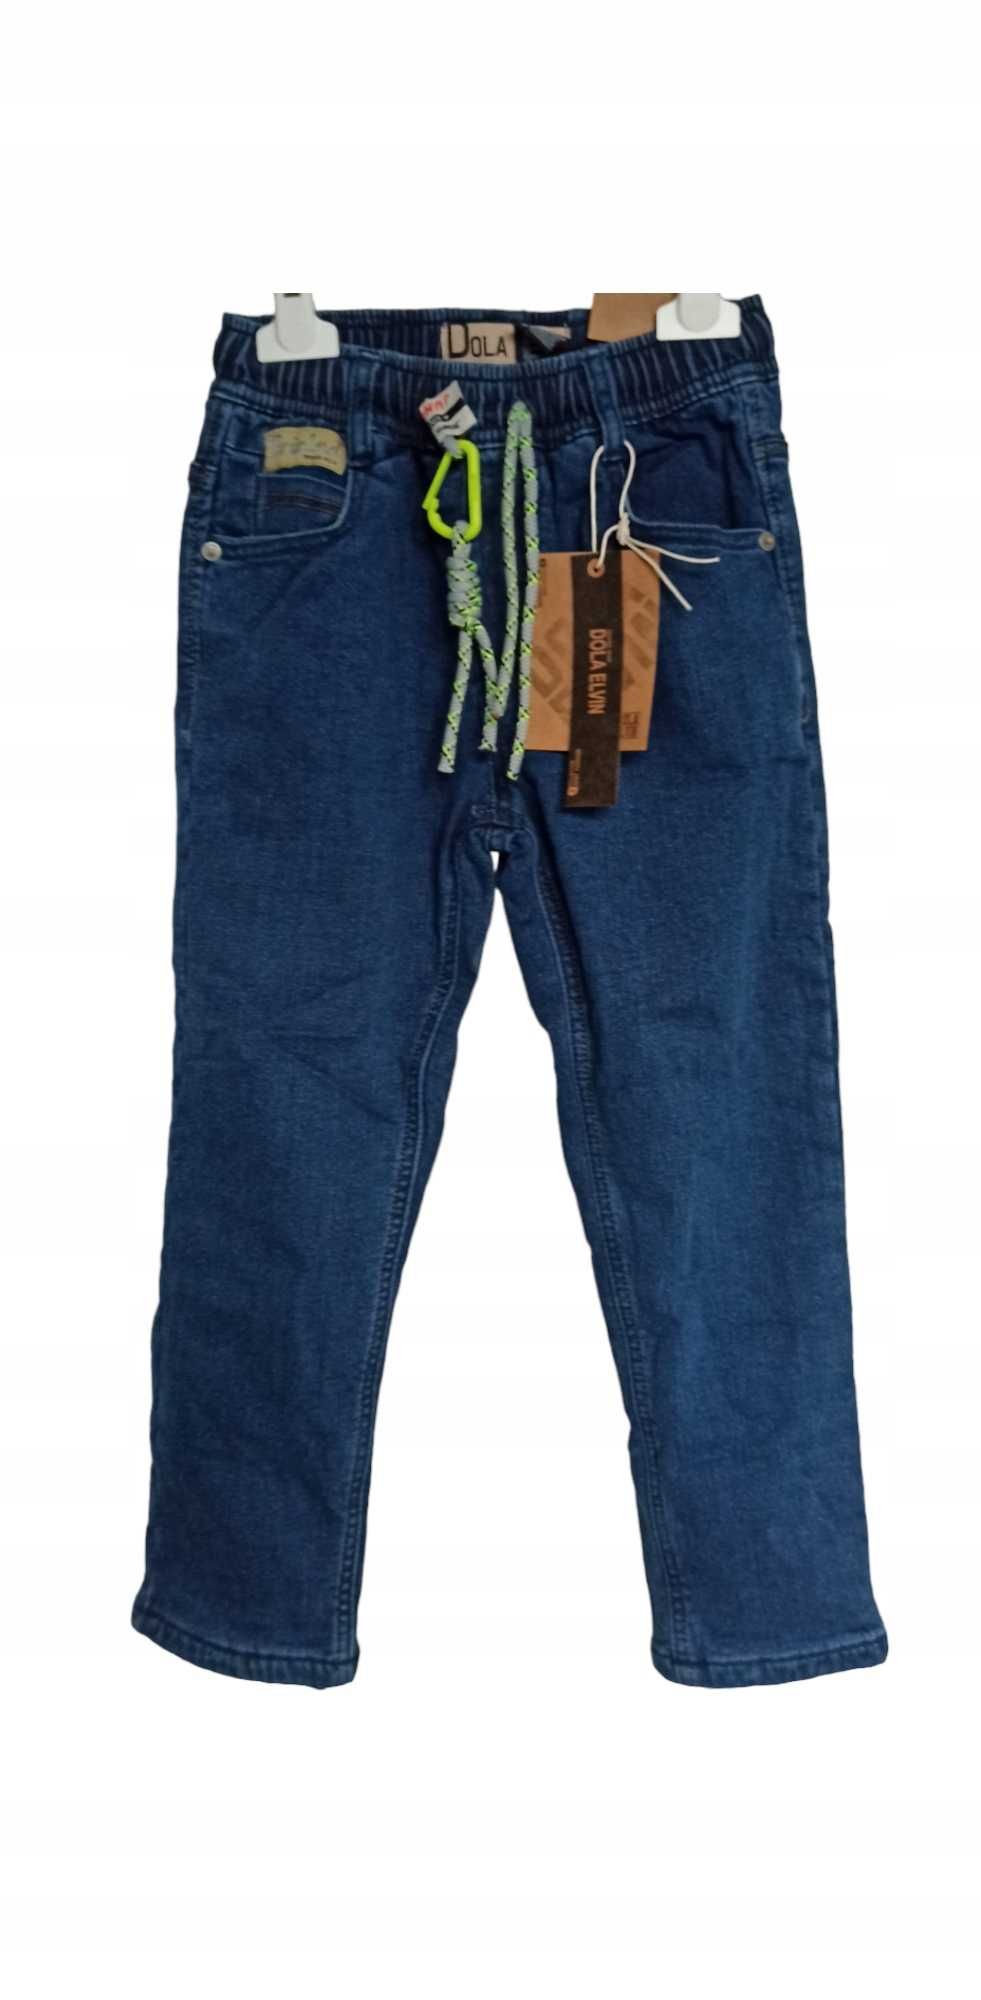 Spodnie Jeans miękkie elastyczne GUMA ocieplane polarem nowy 146-152